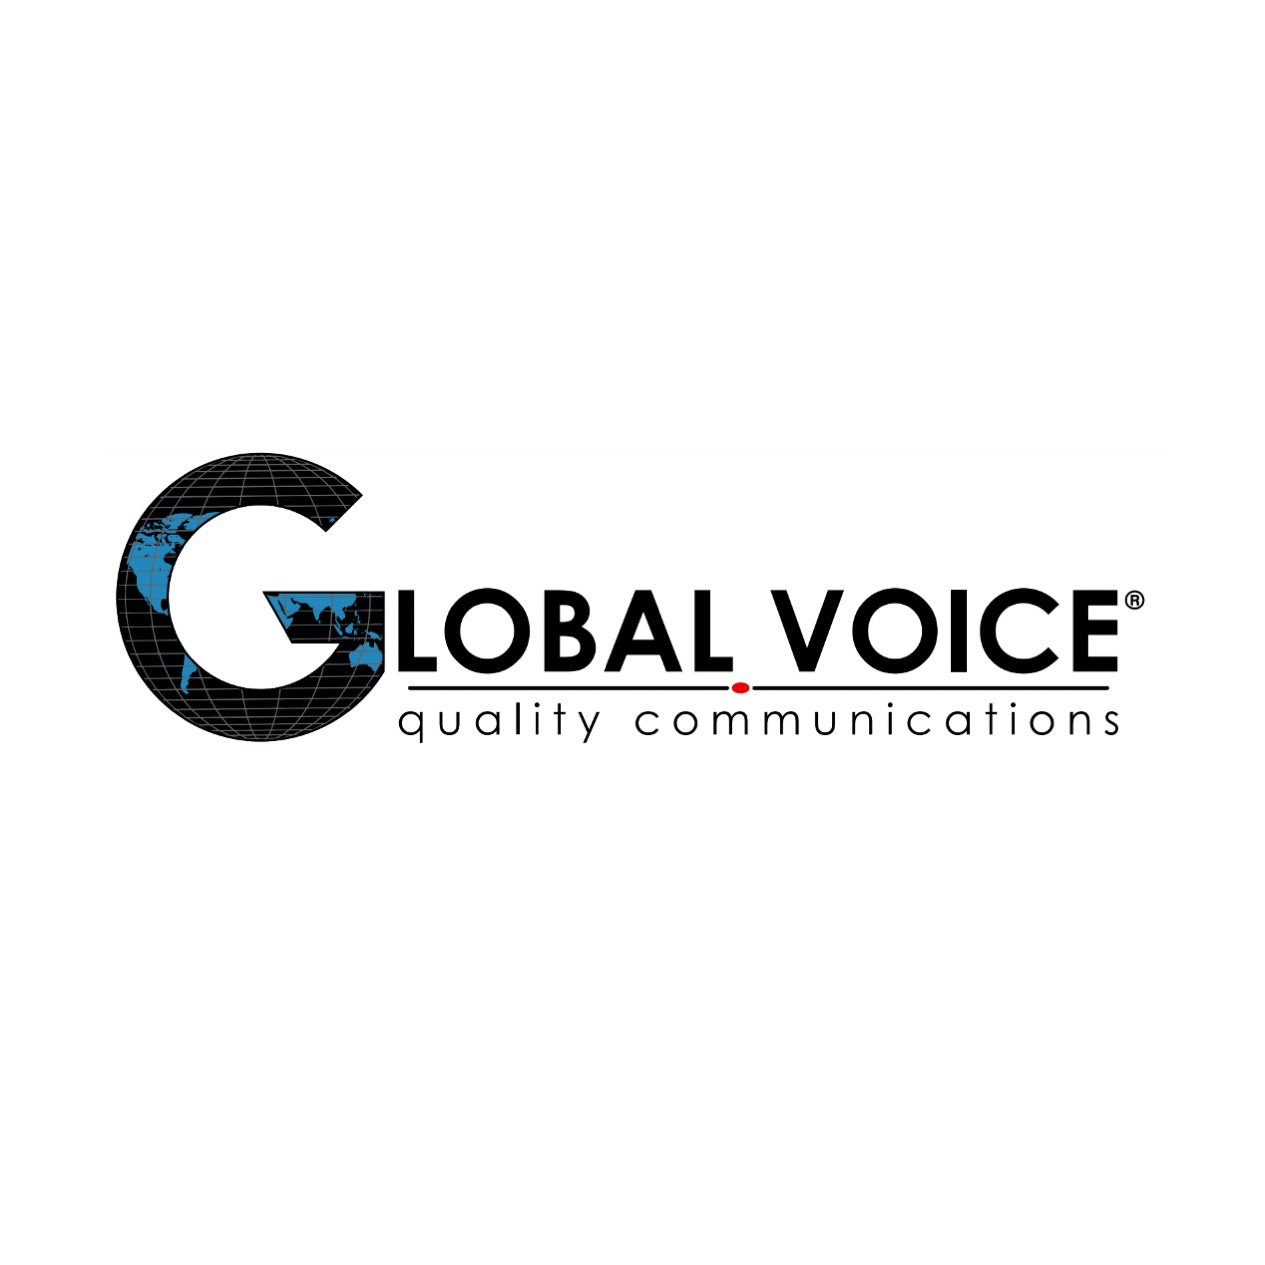 Voz global